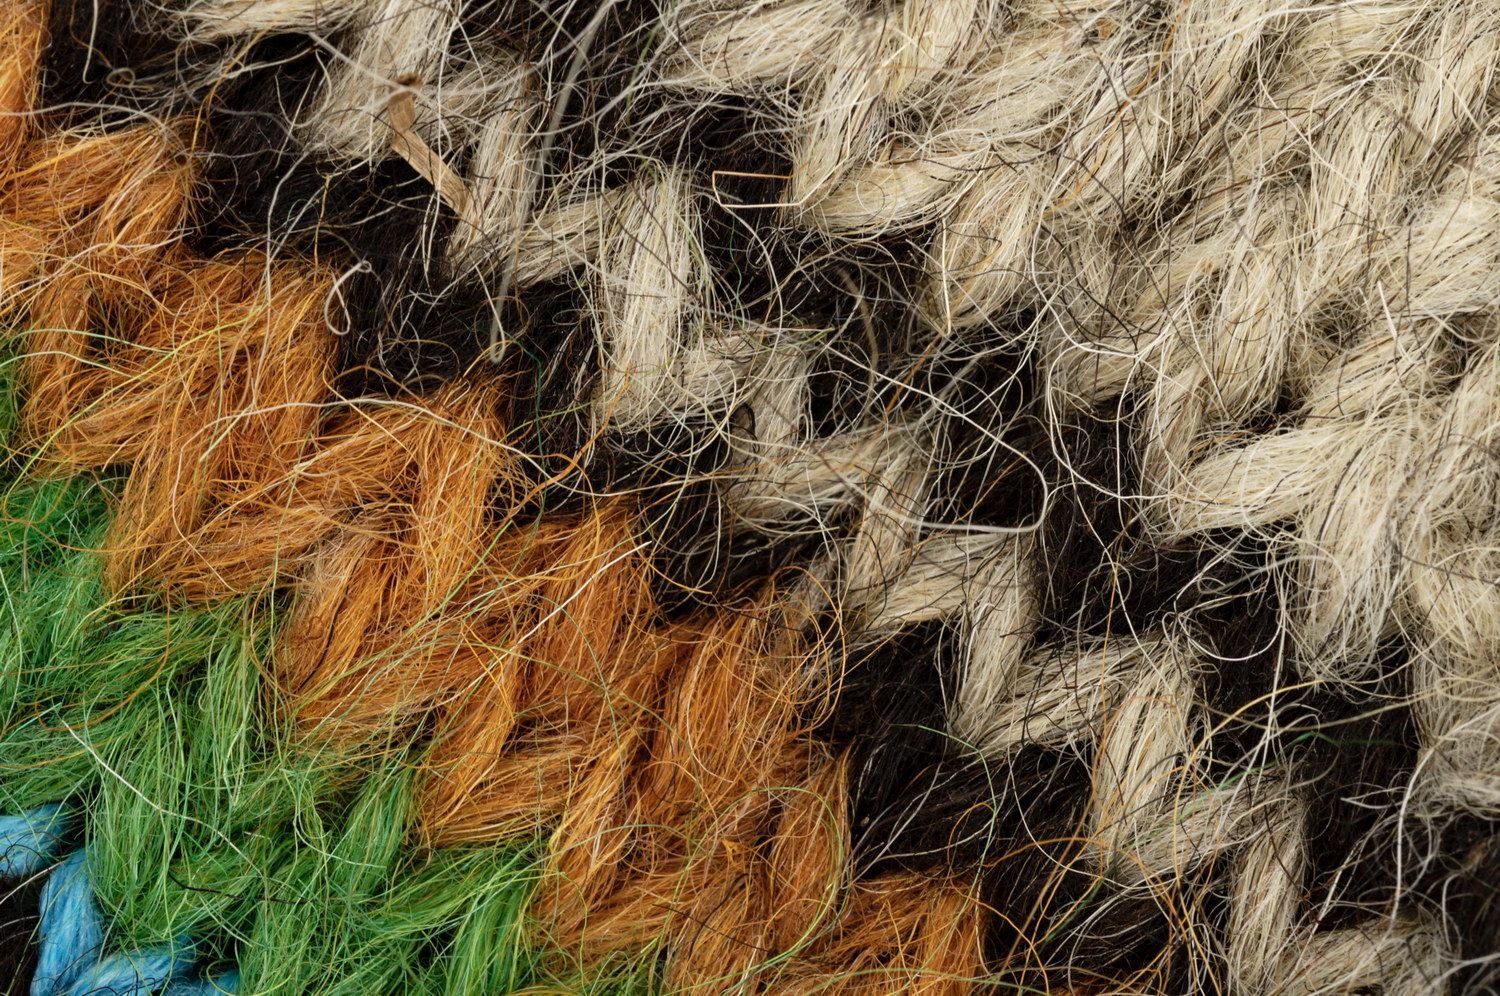 Calcetines de lana para hombres foto 1